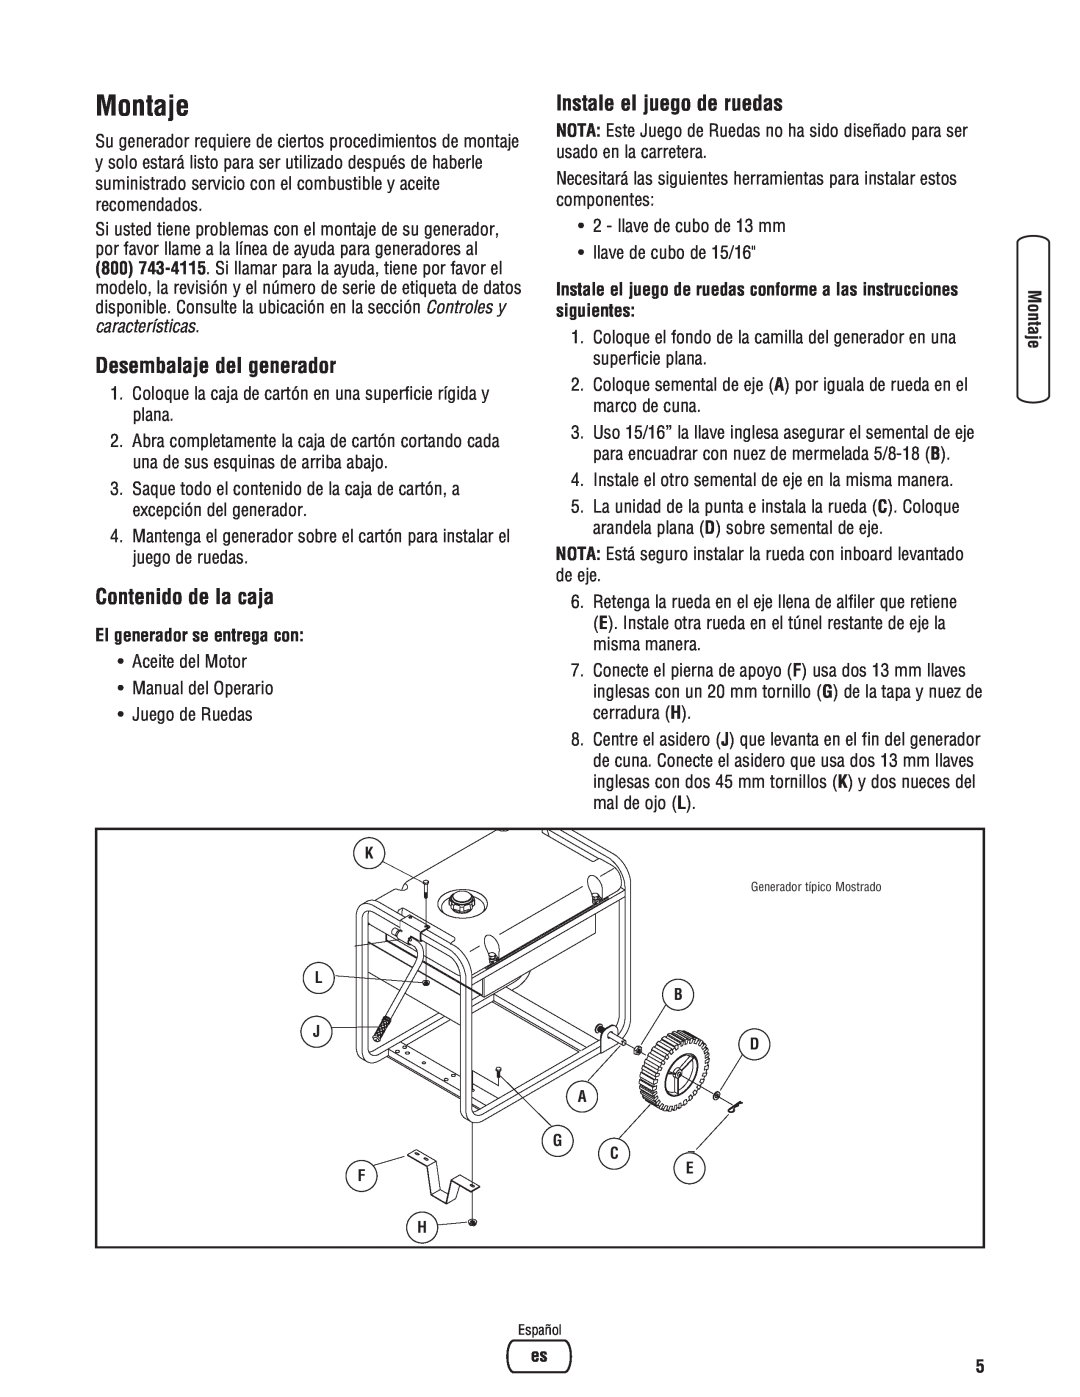 Briggs & Stratton 30348 manual Montaje, Desembalaje del generador, Instale el juego de ruedas, Contenido de la caja 